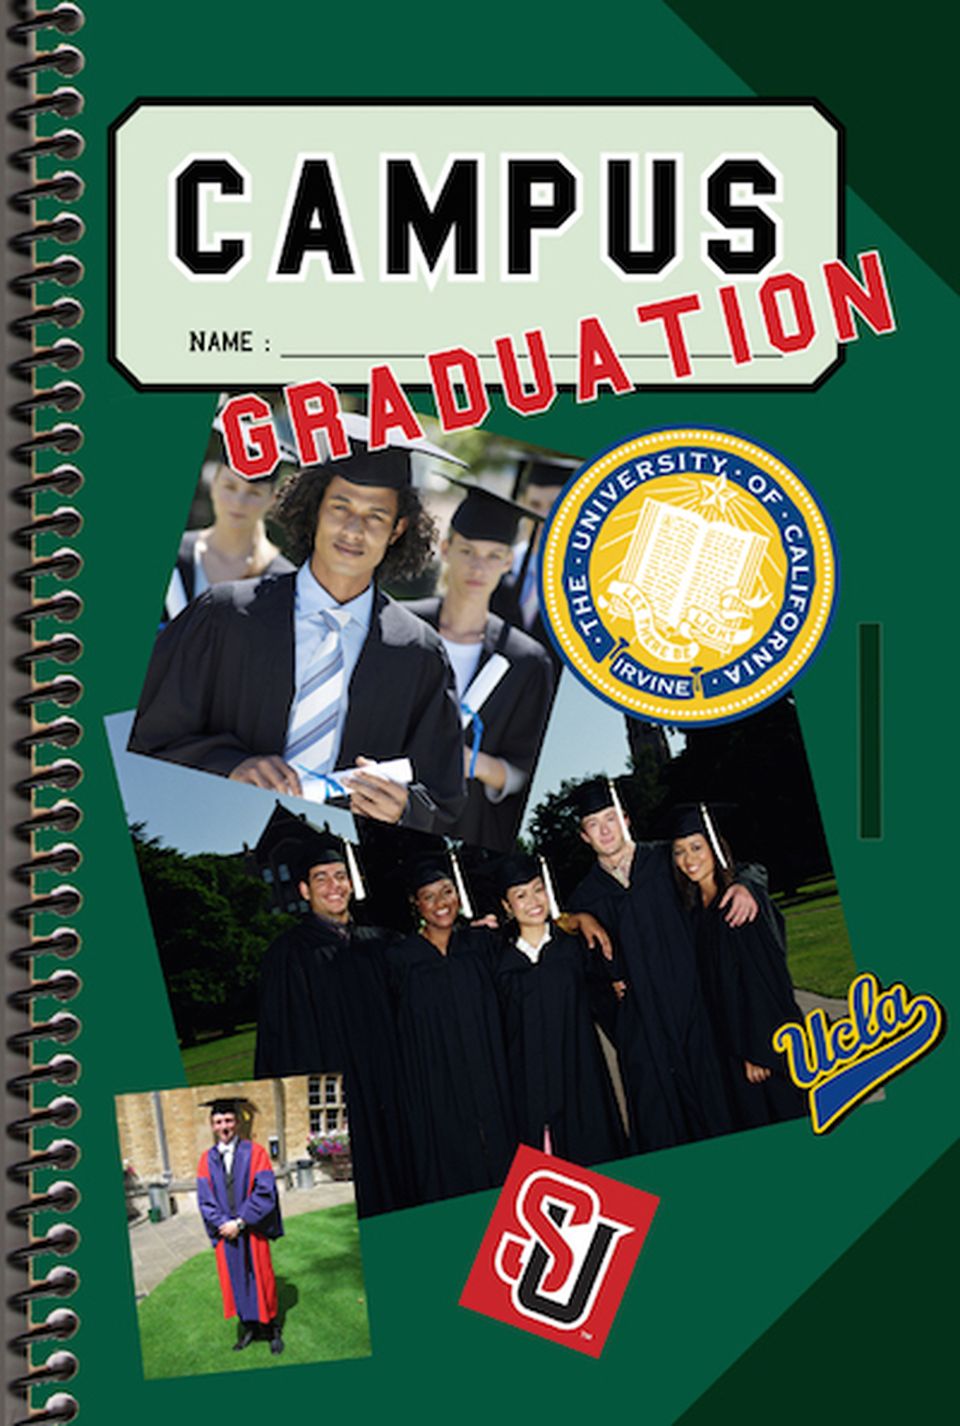 Campus : Graduation image